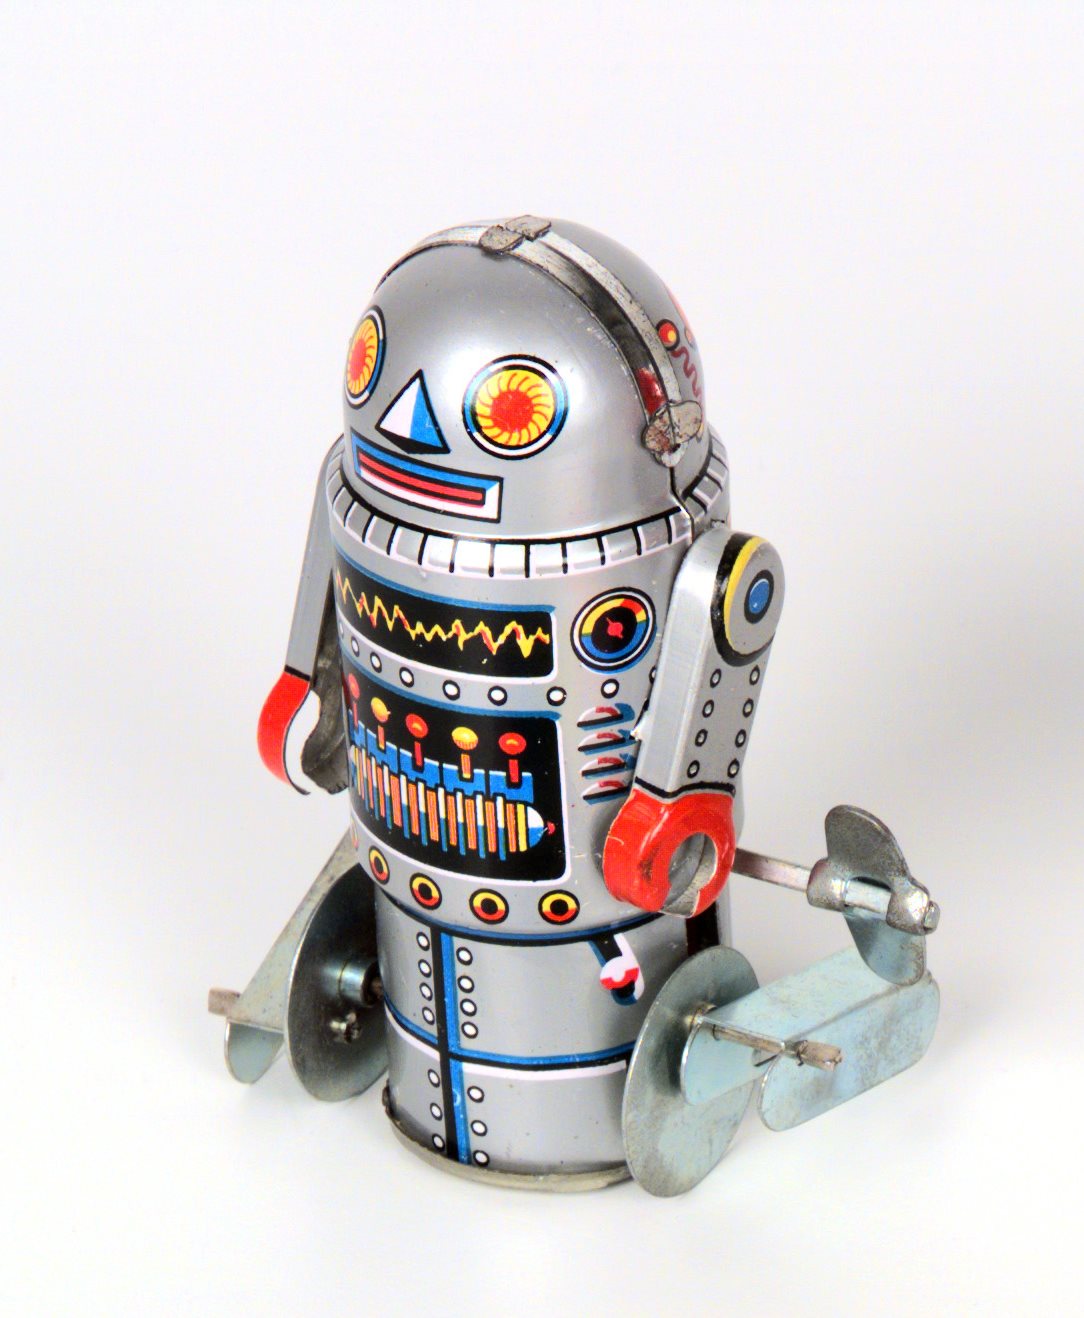 Toy robot by Noguchi